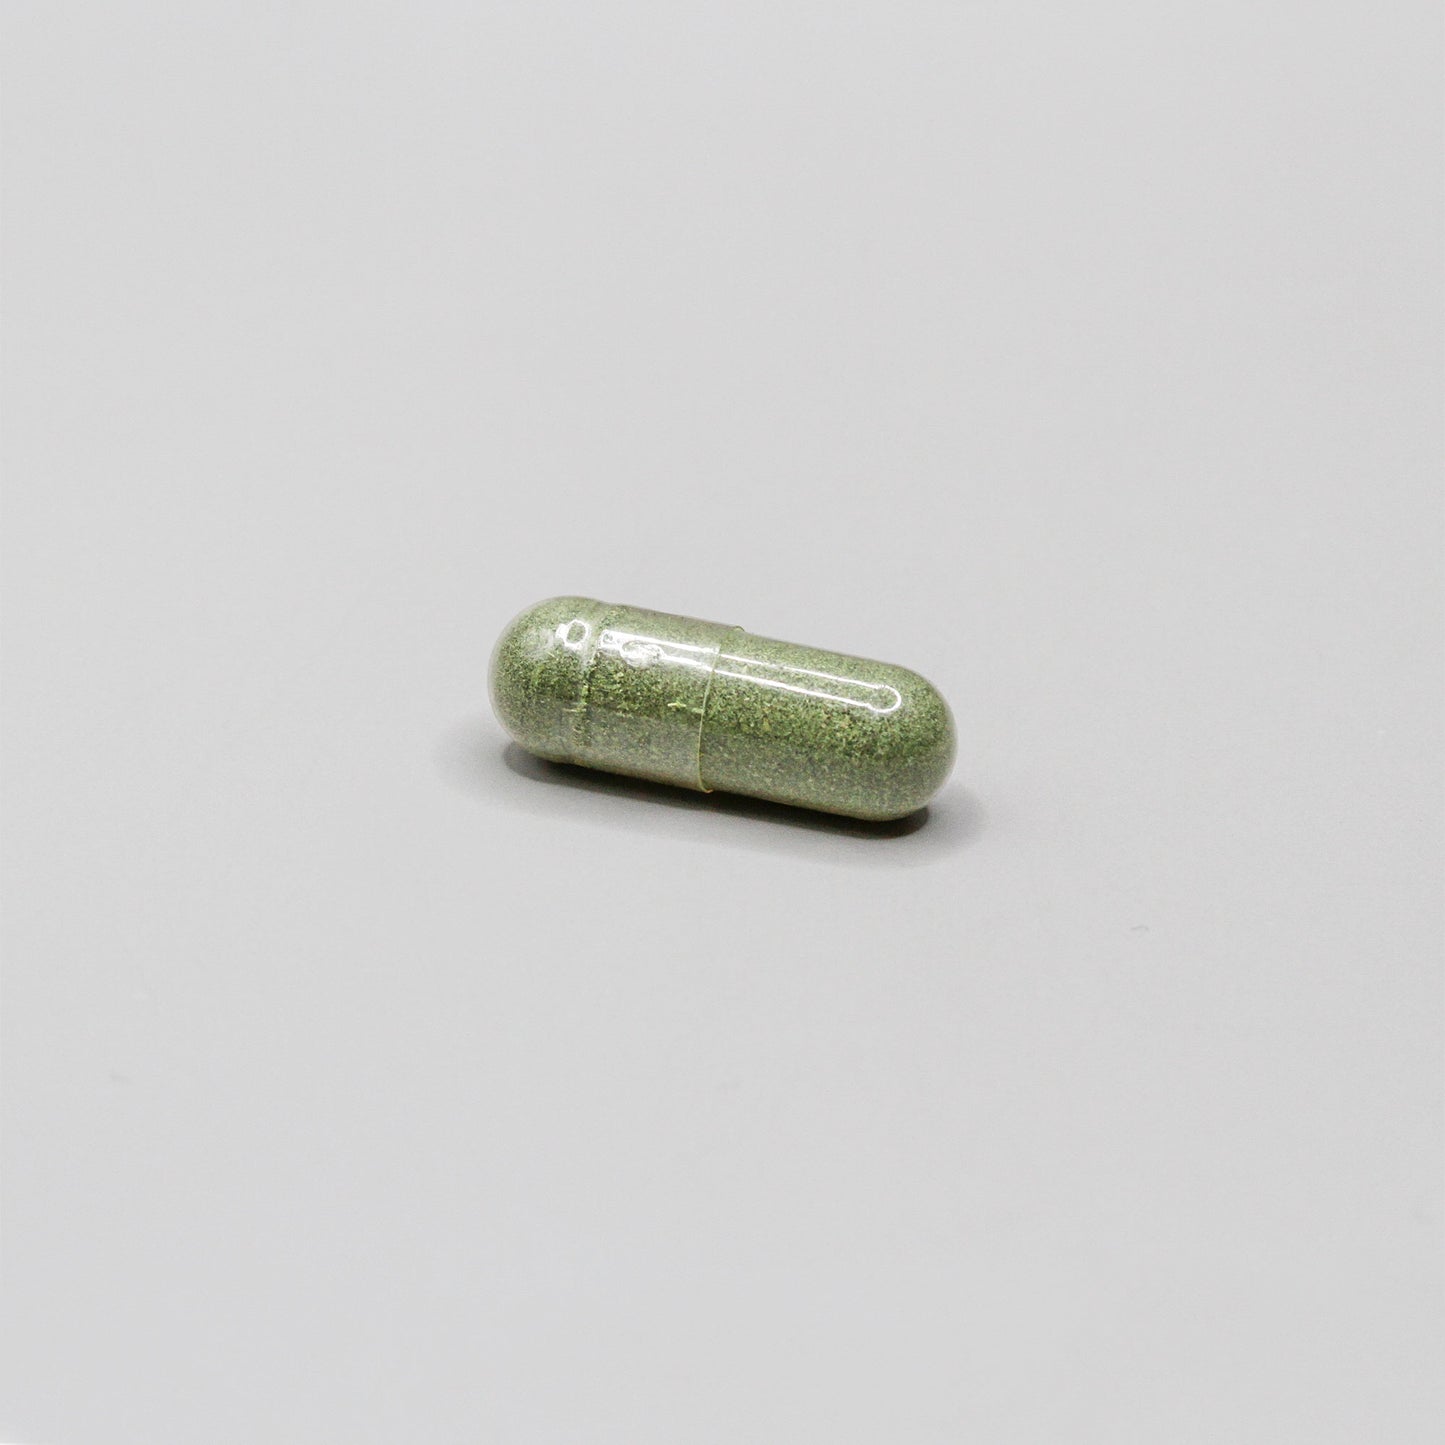 Green pill